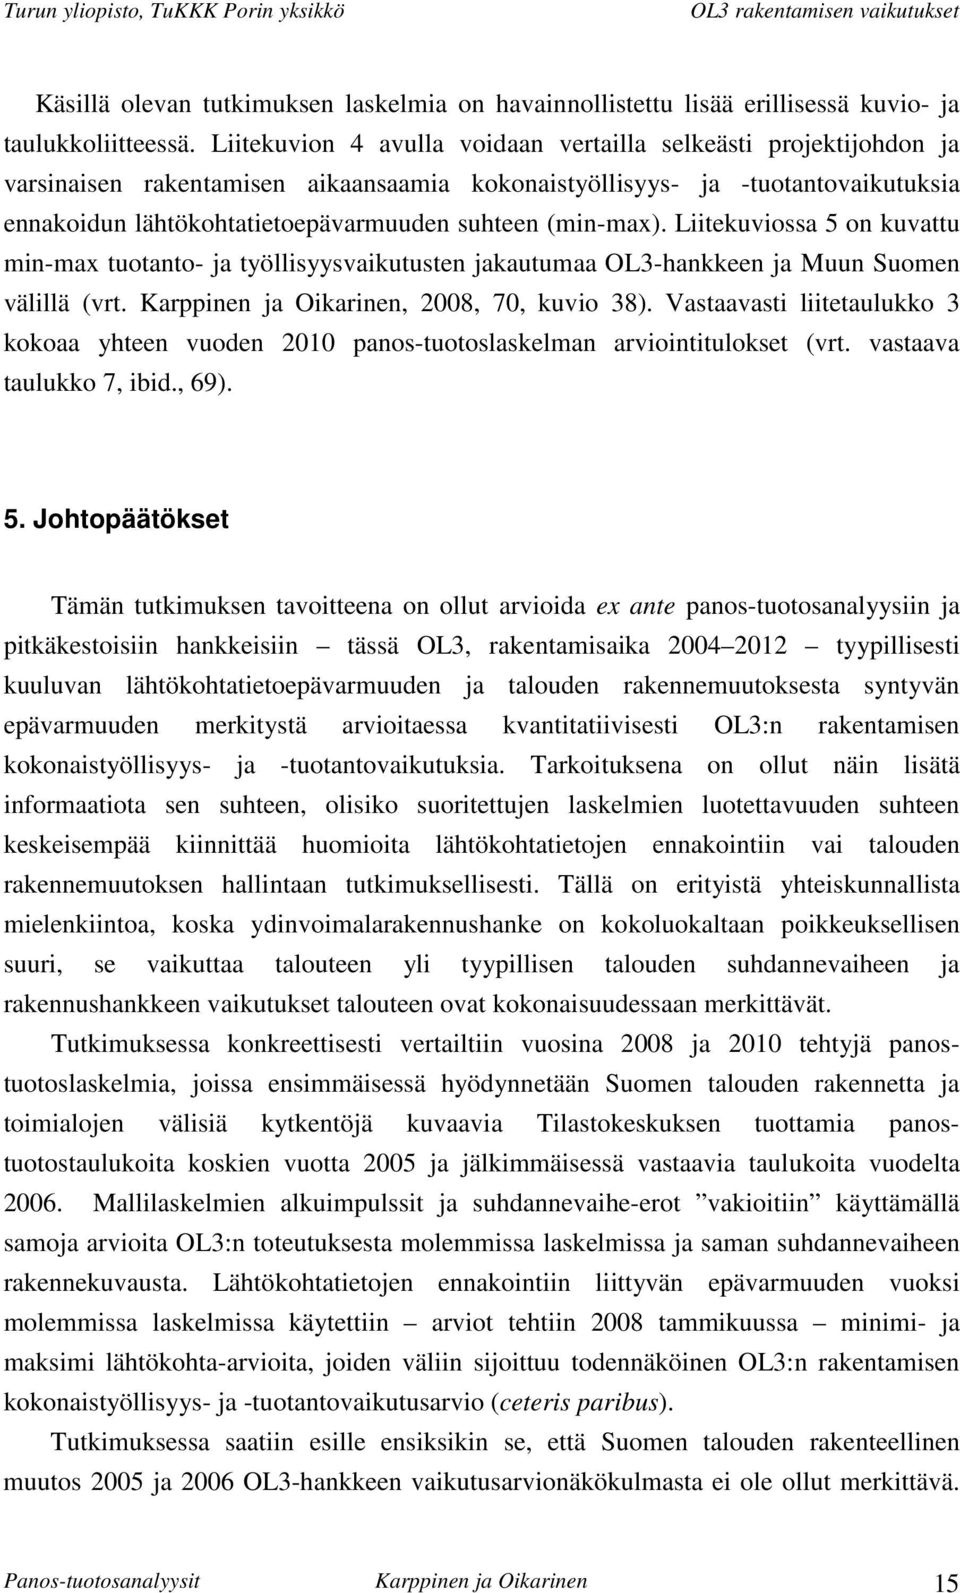 (min-max). Liitekuviossa 5 on kuvattu min-max tuotanto- ja työllisyysvaikutusten jakautumaa OL3-hankkeen ja Muun Suomen välillä (vrt. Karppinen ja Oikarinen, 2008, 70, kuvio 38).